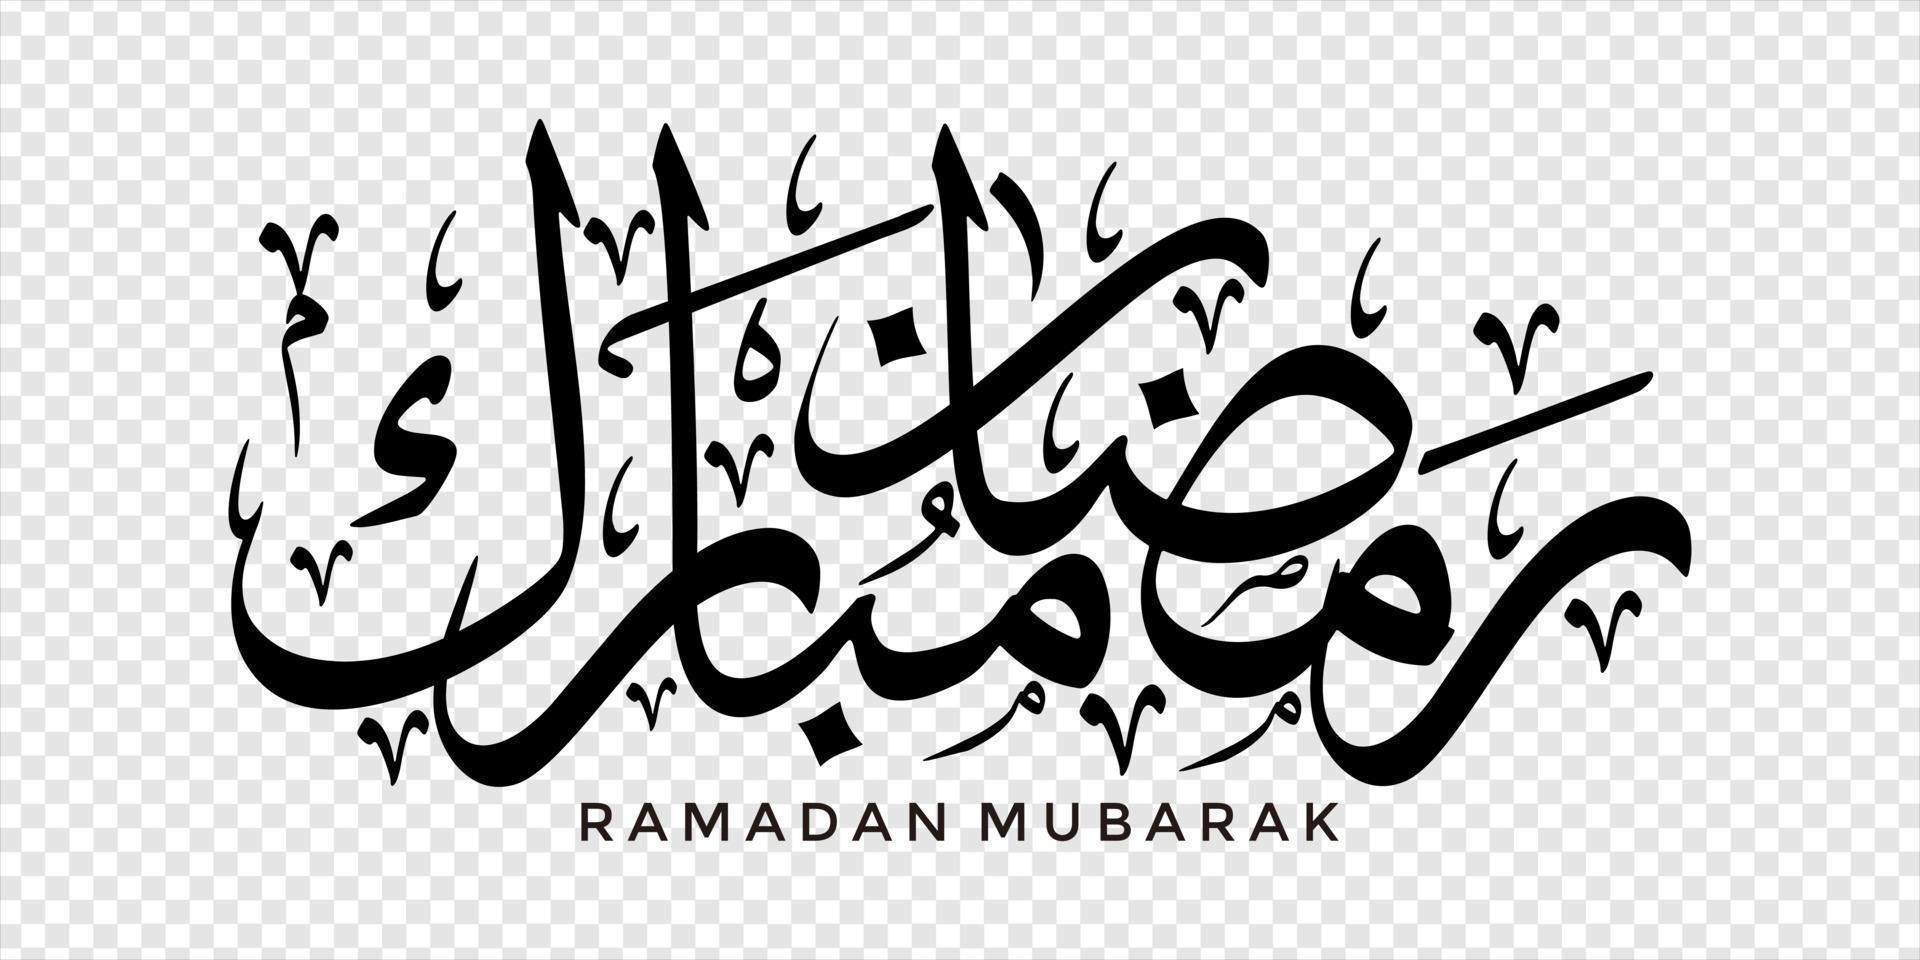 ramadan mubarak en caligrafía árabe, elemento de diseño en un fondo transparente. ilustración vectorial vector